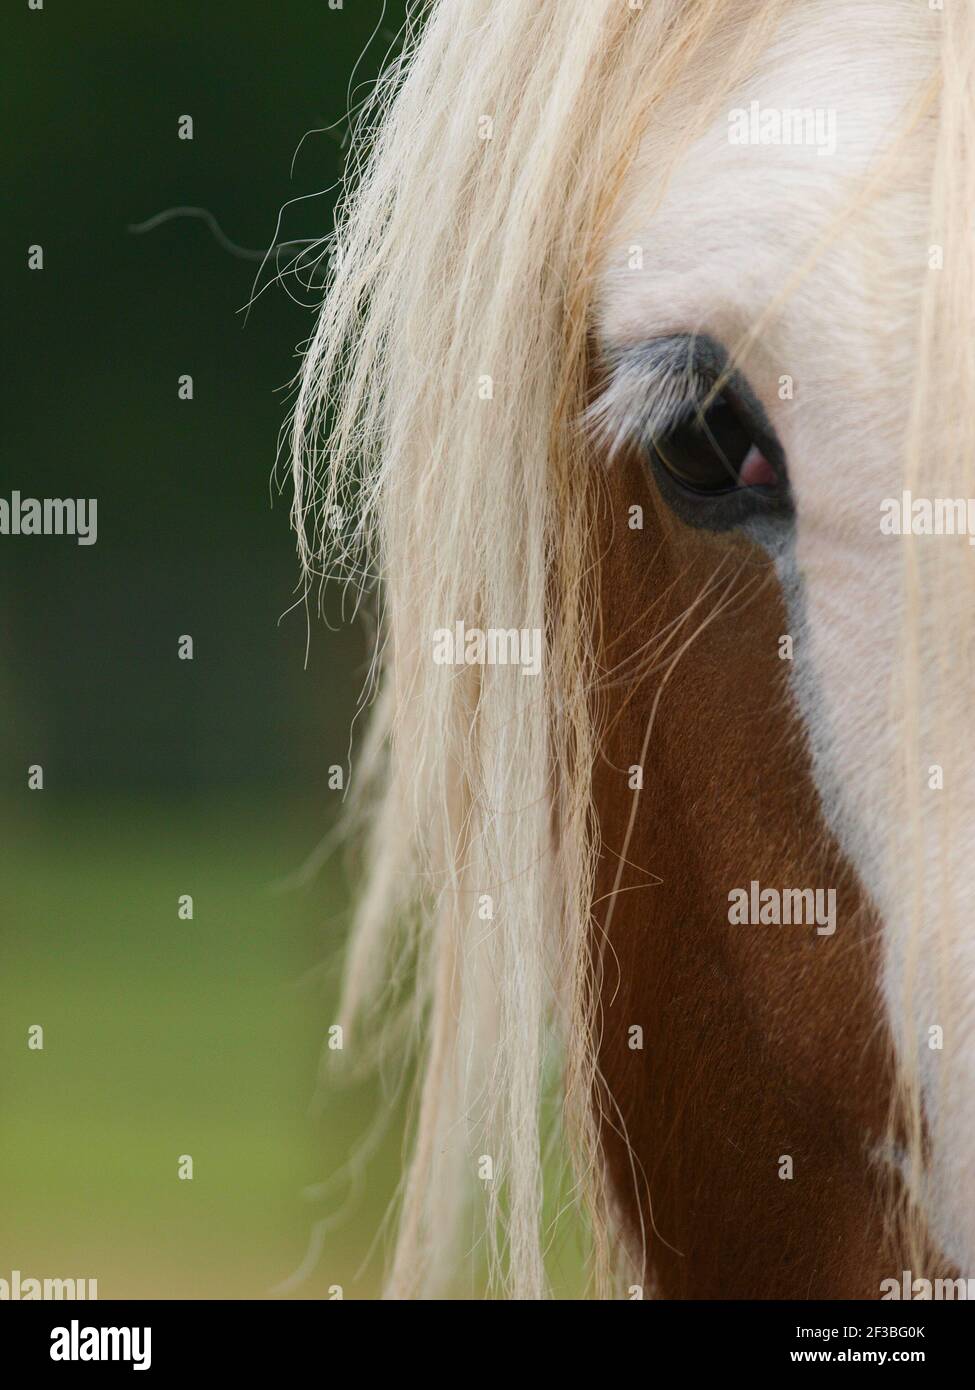 Un gros plan de l'œil et du côté de la face d'un joli poney. Banque D'Images